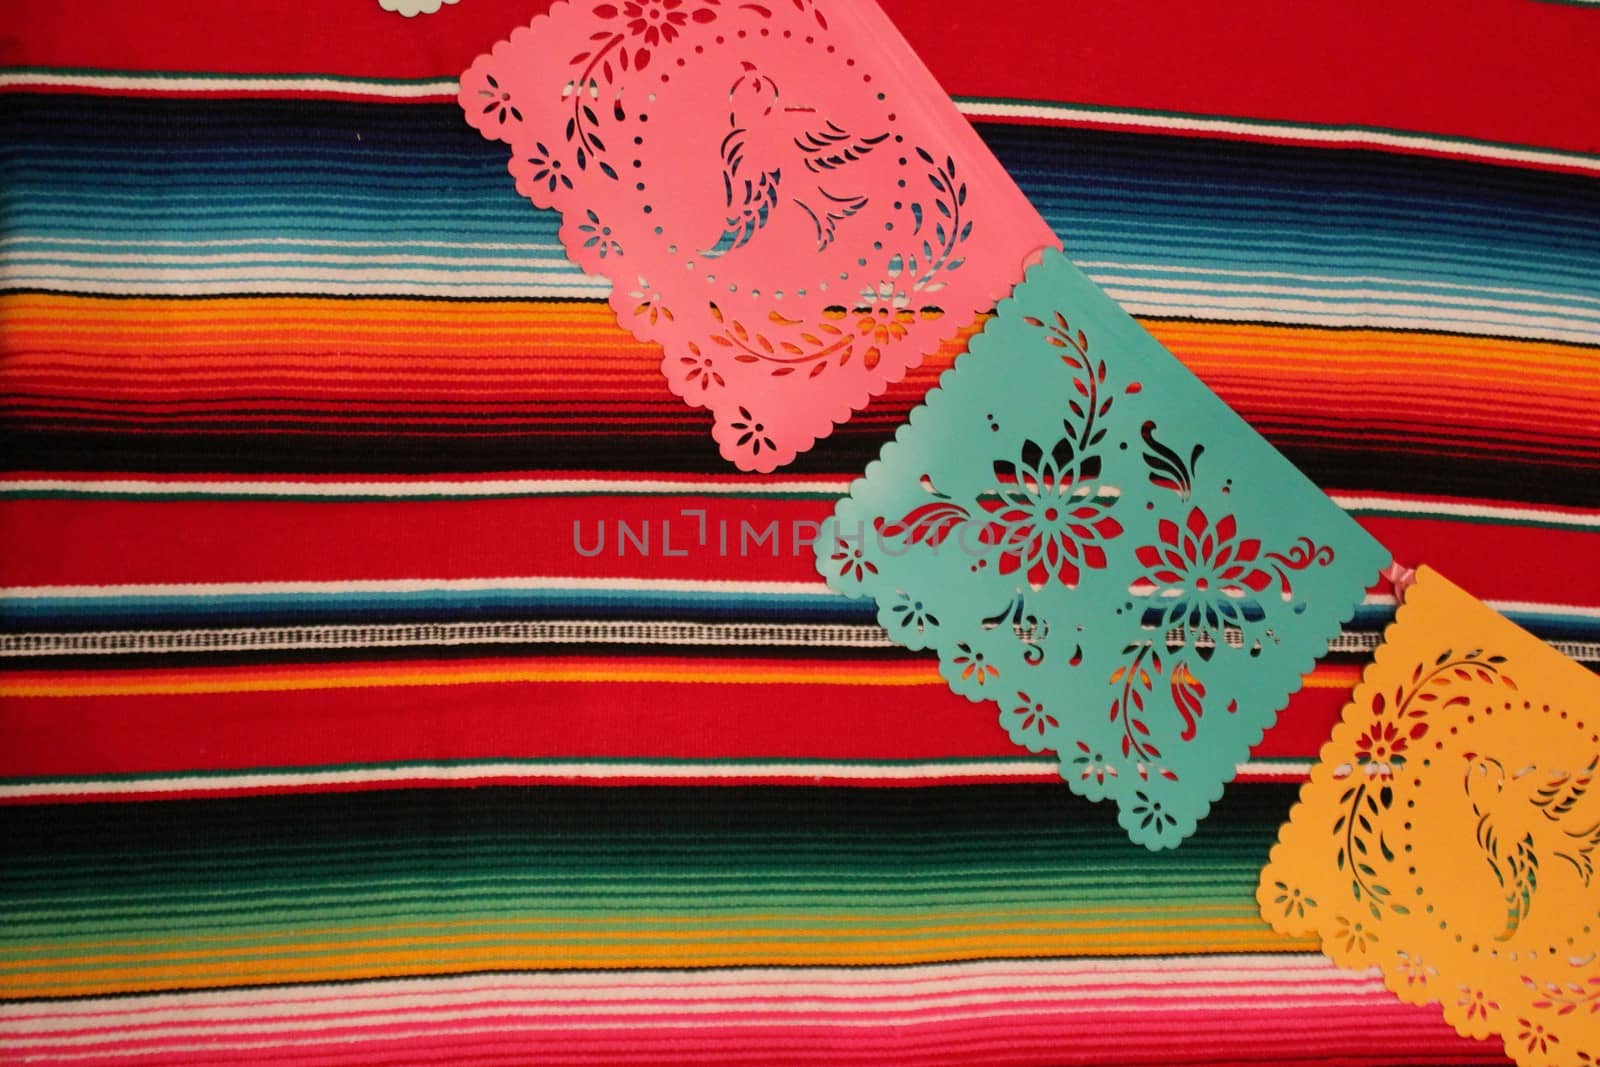 Mexico poncho sombrero papel picado background fiesta cinco de mayo decoration bunting by cheekylorns